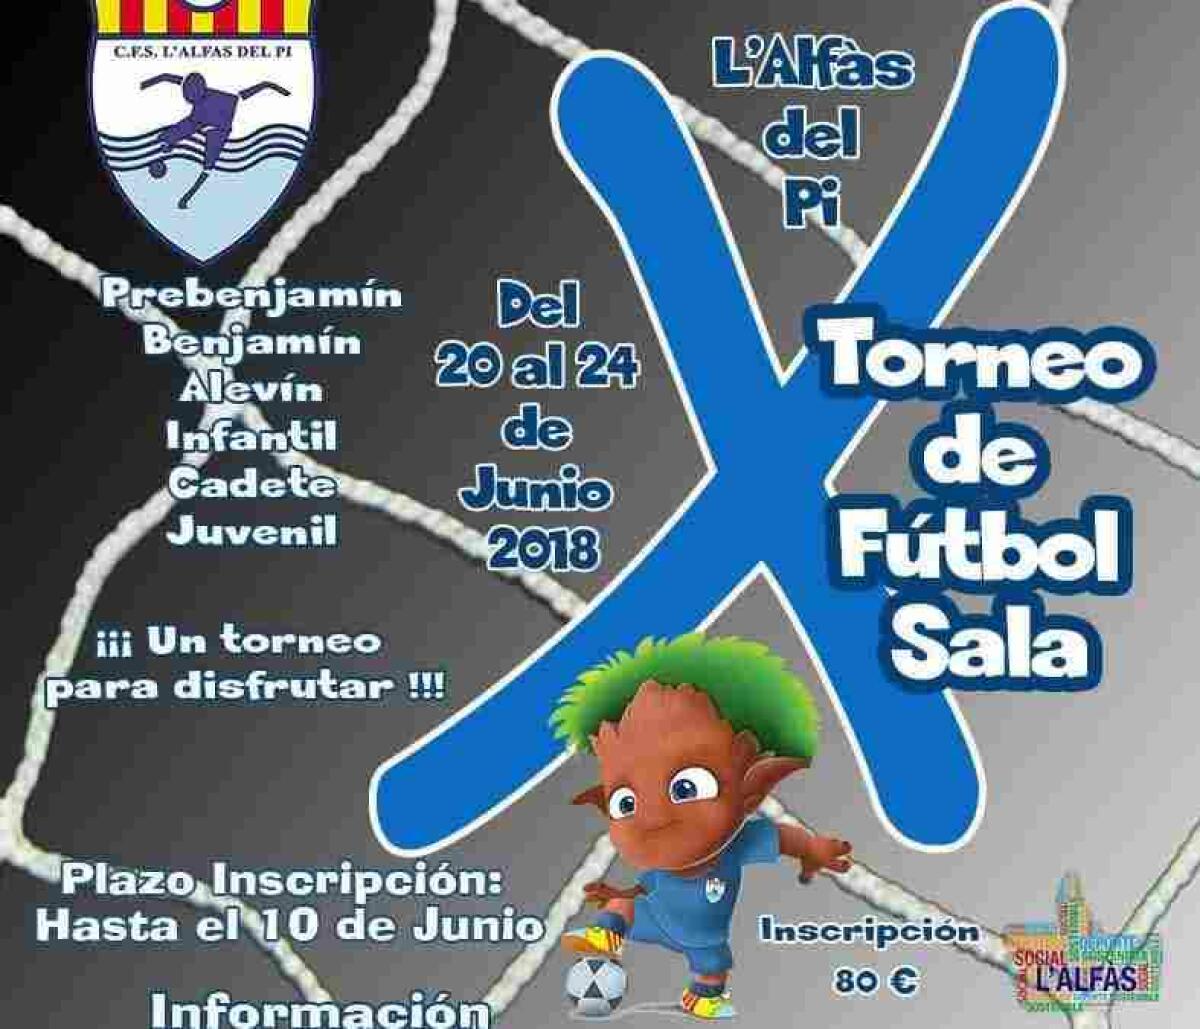 La X edición del torneo de Fútbol Sala base de l’Alfàs supera la participación de los anteriores con mas de 40 equipos